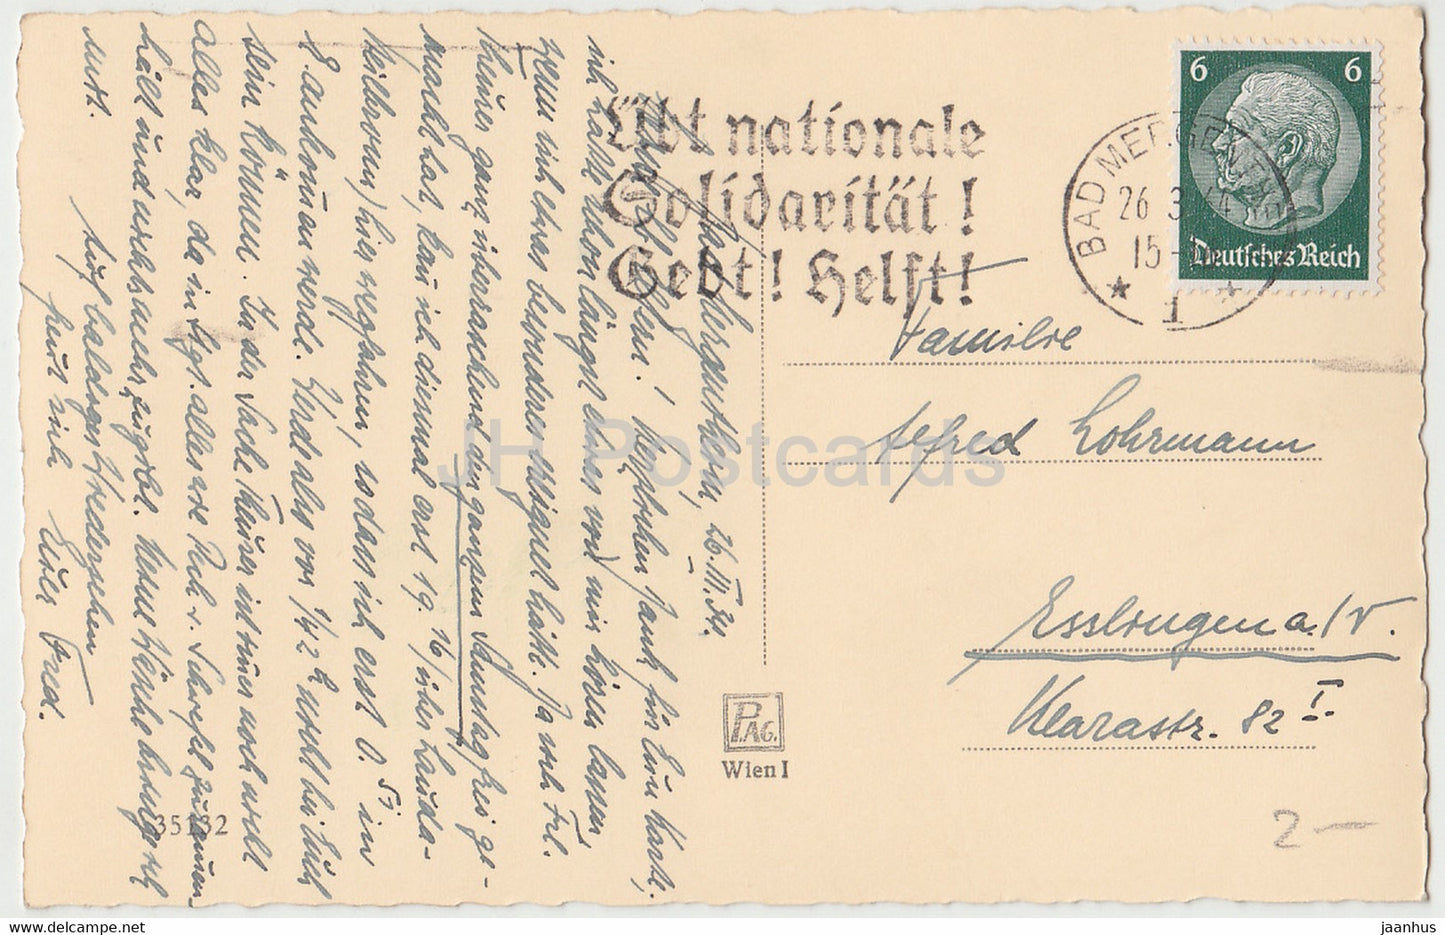 Ostergrußkarte - Gesegnete Ostern - Landstraße - 35132 - alte Postkarte - 1934 - Österreich - gebraucht